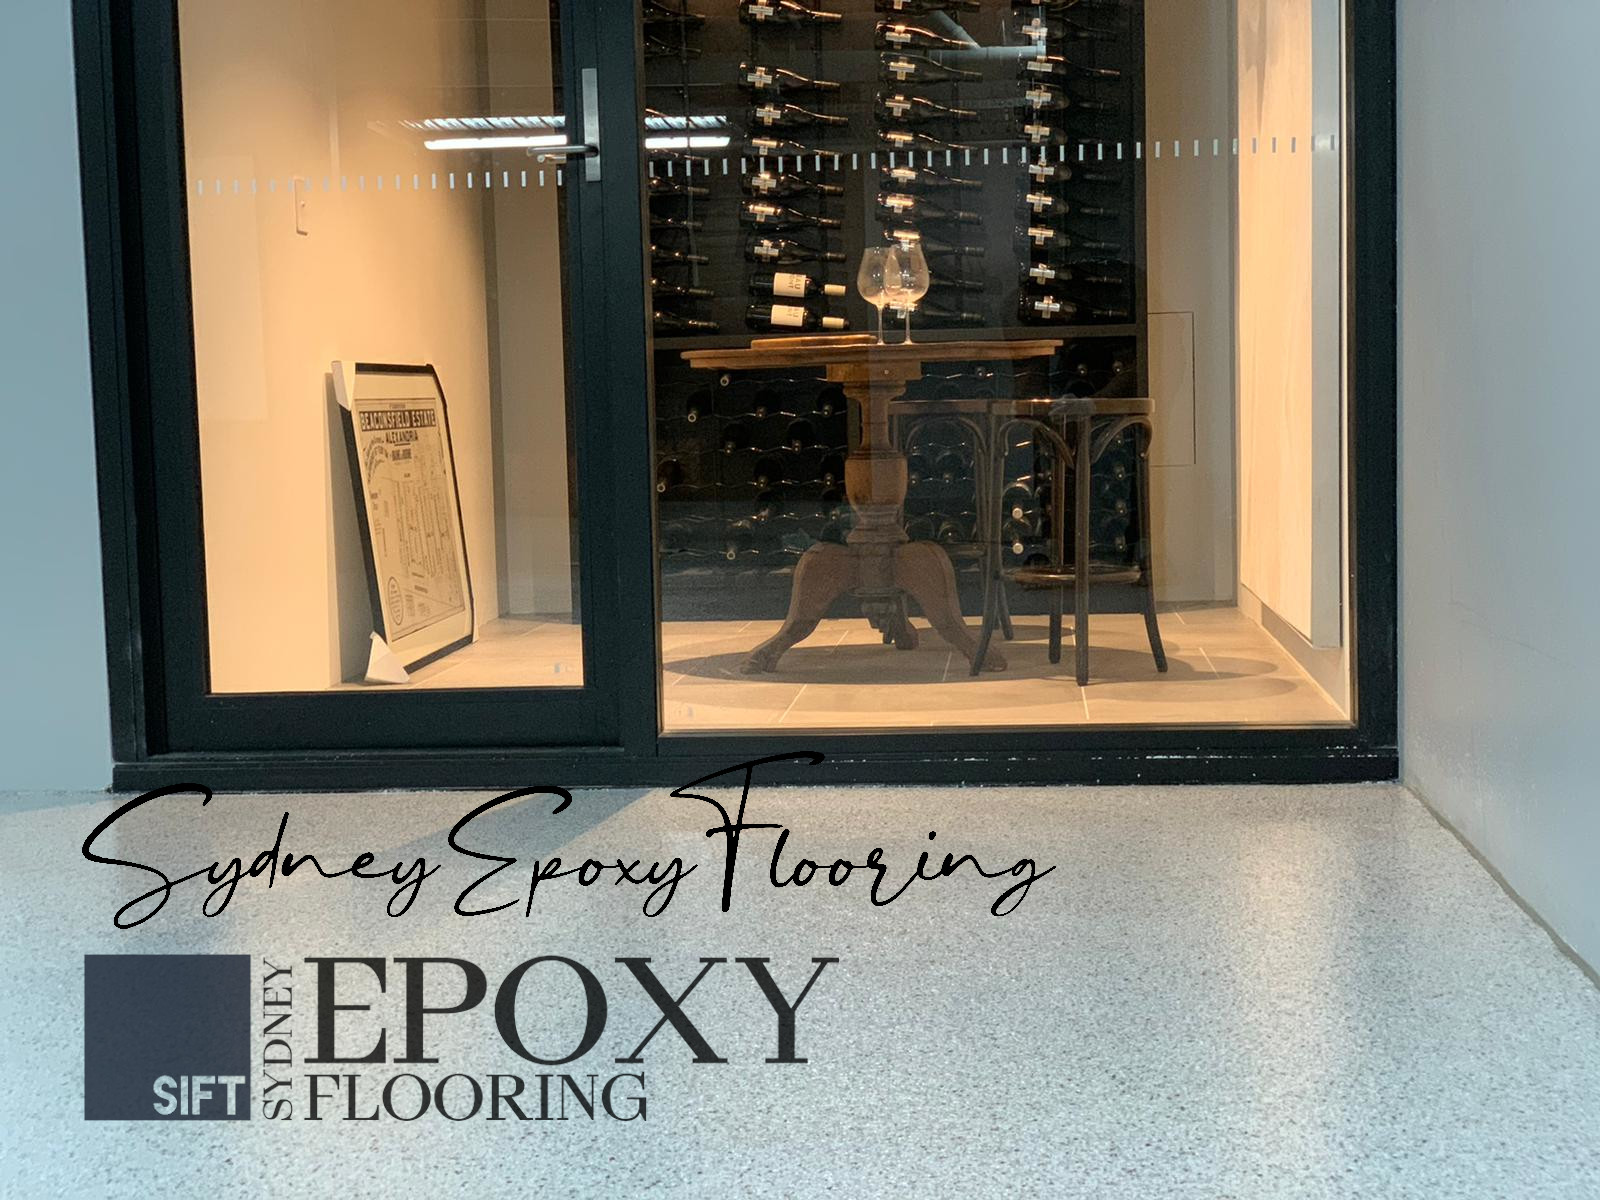 Sydney Epoxy Flooring - Epoxy Floor Coating Cost in Sydney